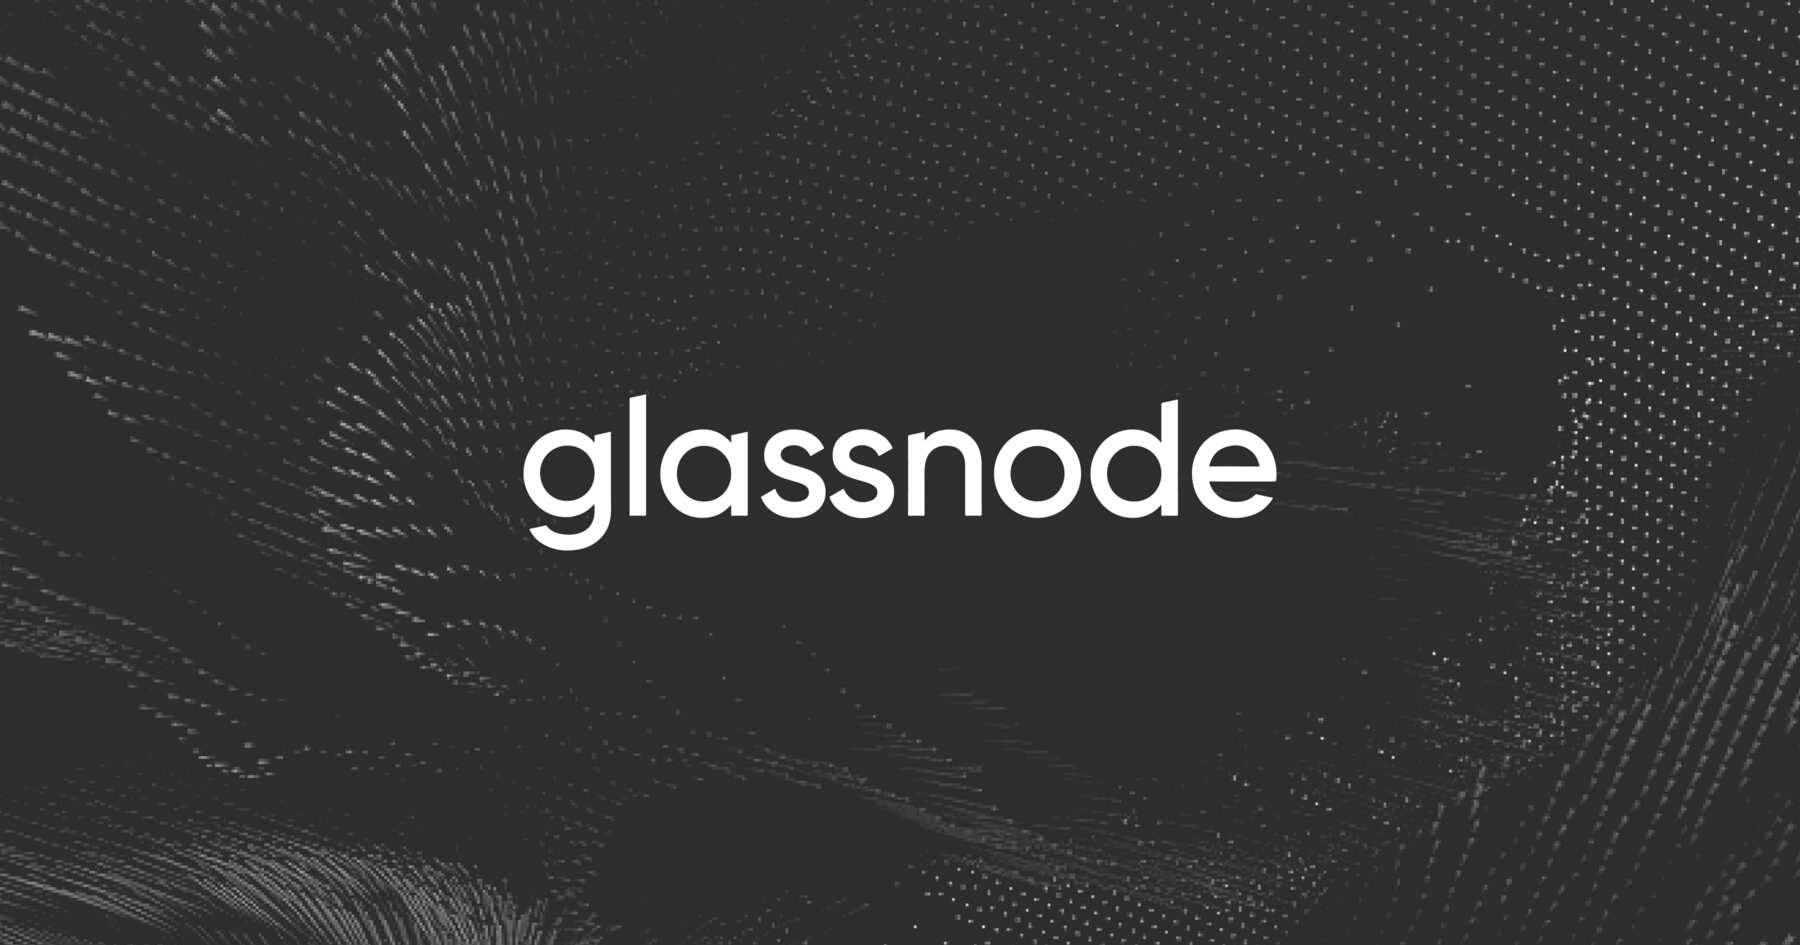 glassnode.com